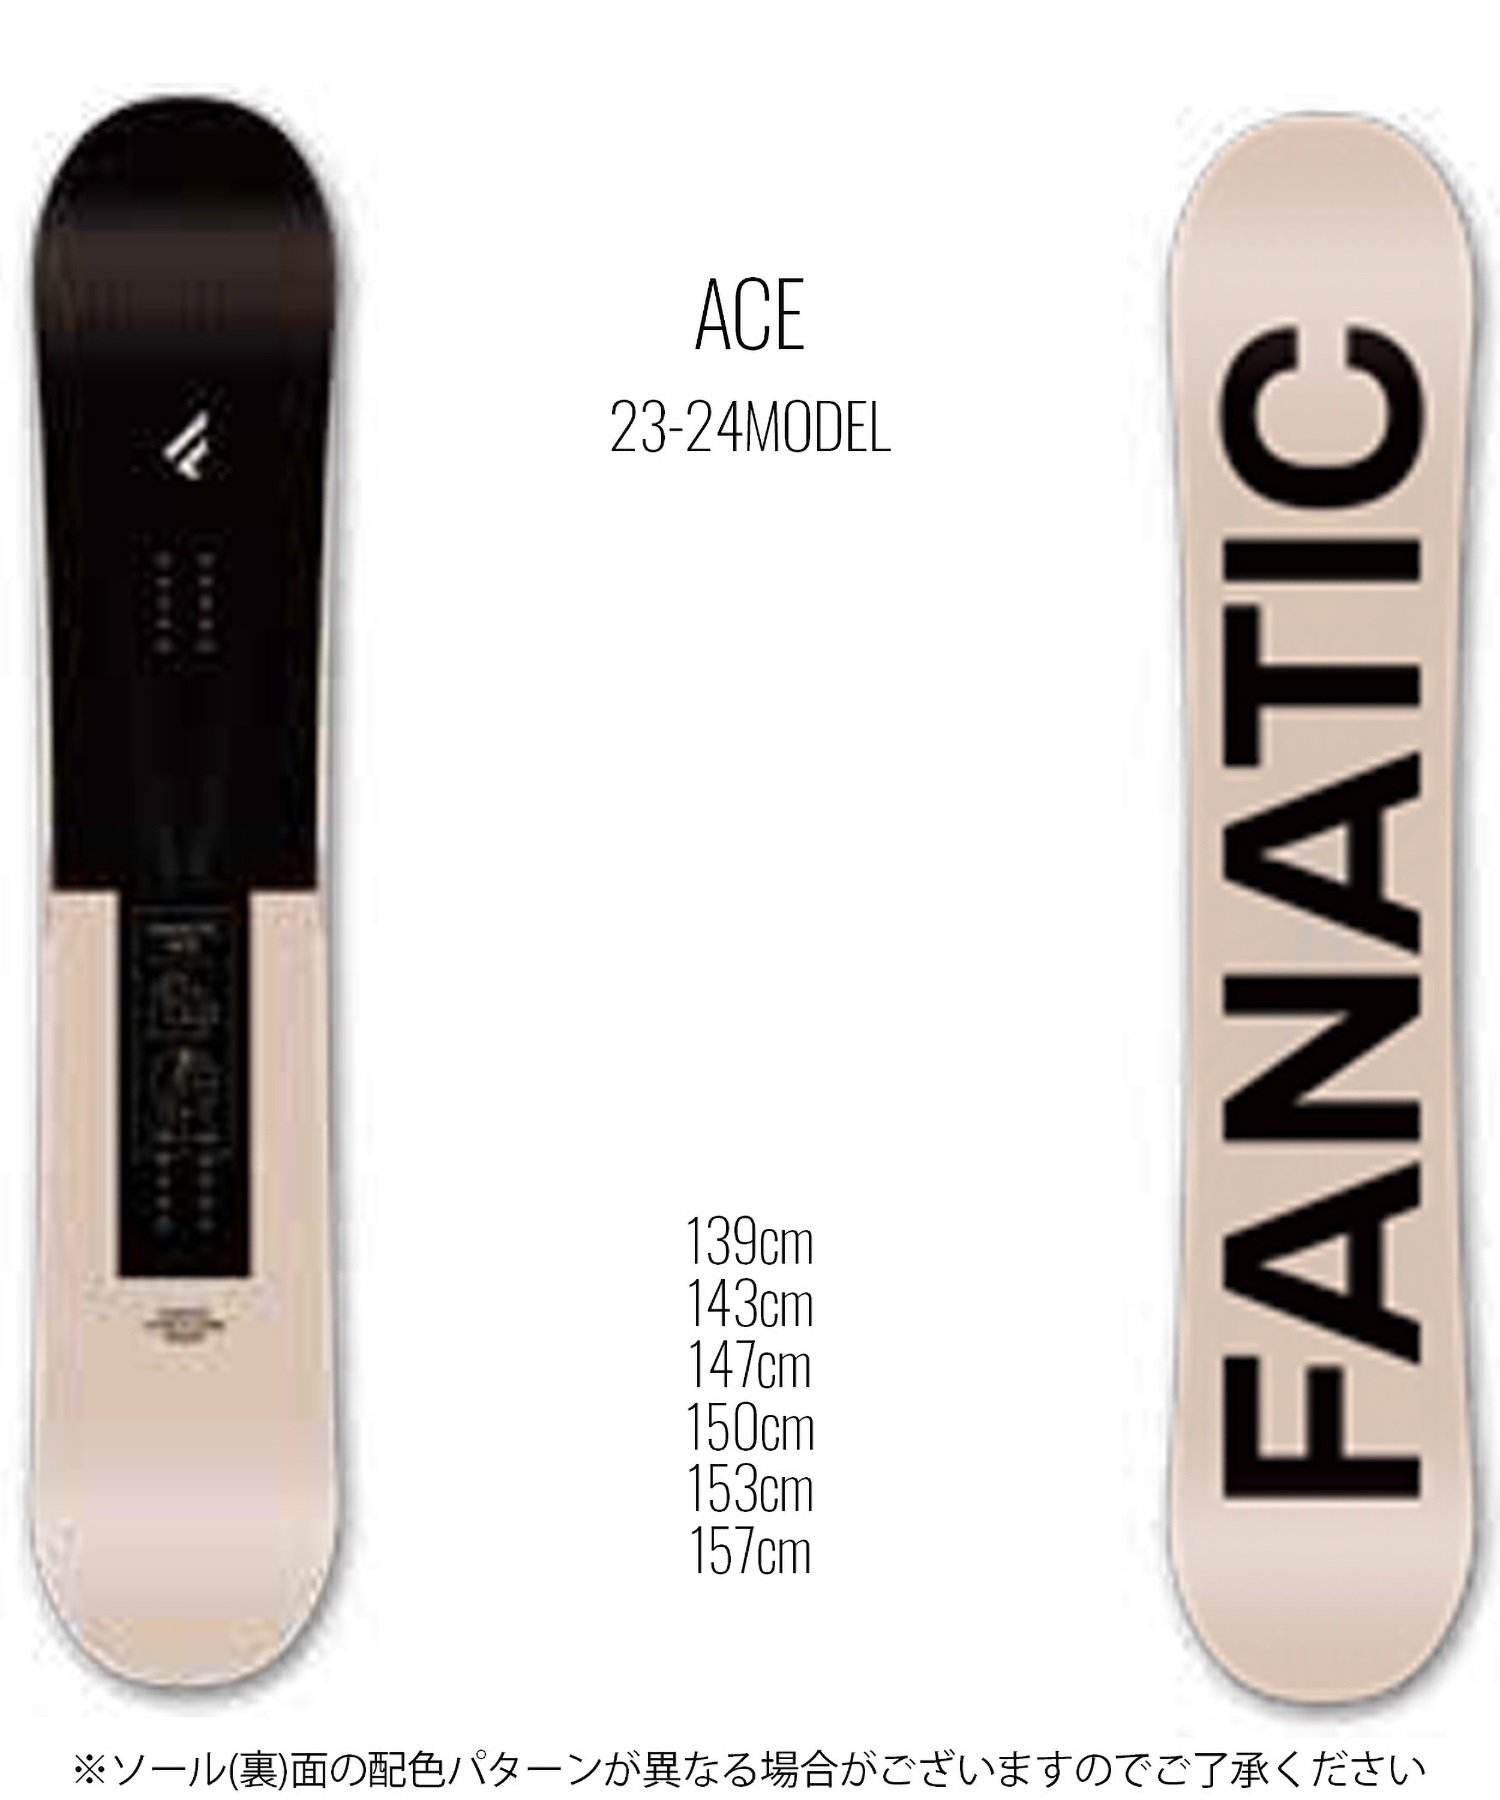 スノーボード 板 ユニセックス FANATIC ファナティック ACE 23-24モデル ムラサキスポーツ KK C10(BEIGE-139cm)